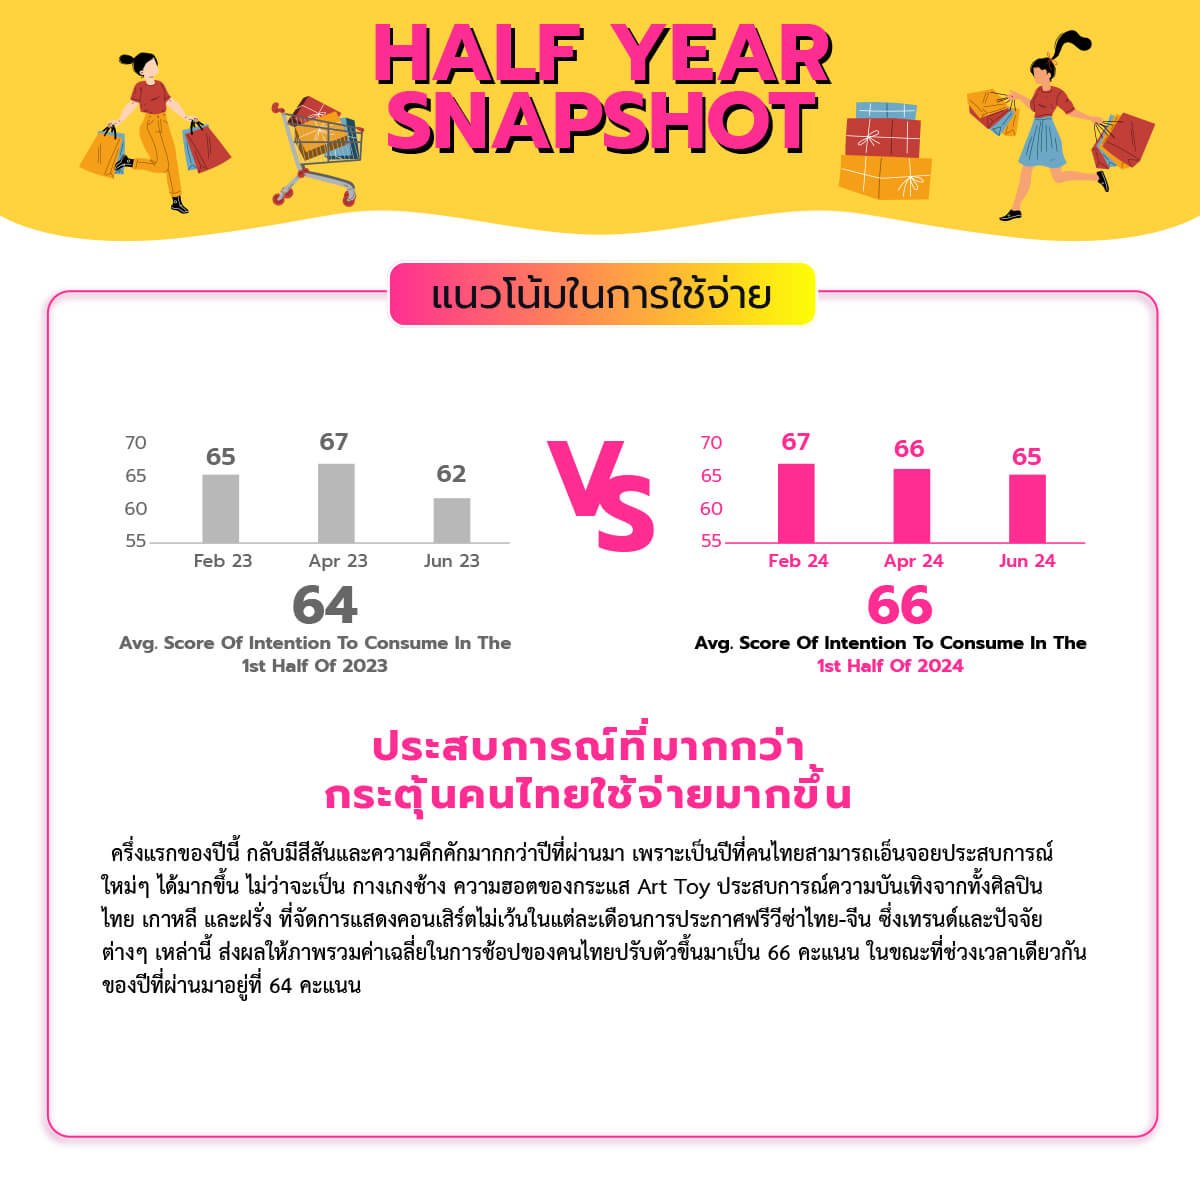 เทรนด์ผู้บริโภคไทยครึ่งปี 67 คนไทยมีความสุขทรงตัว การใช้จ่ายยังคึกคัก